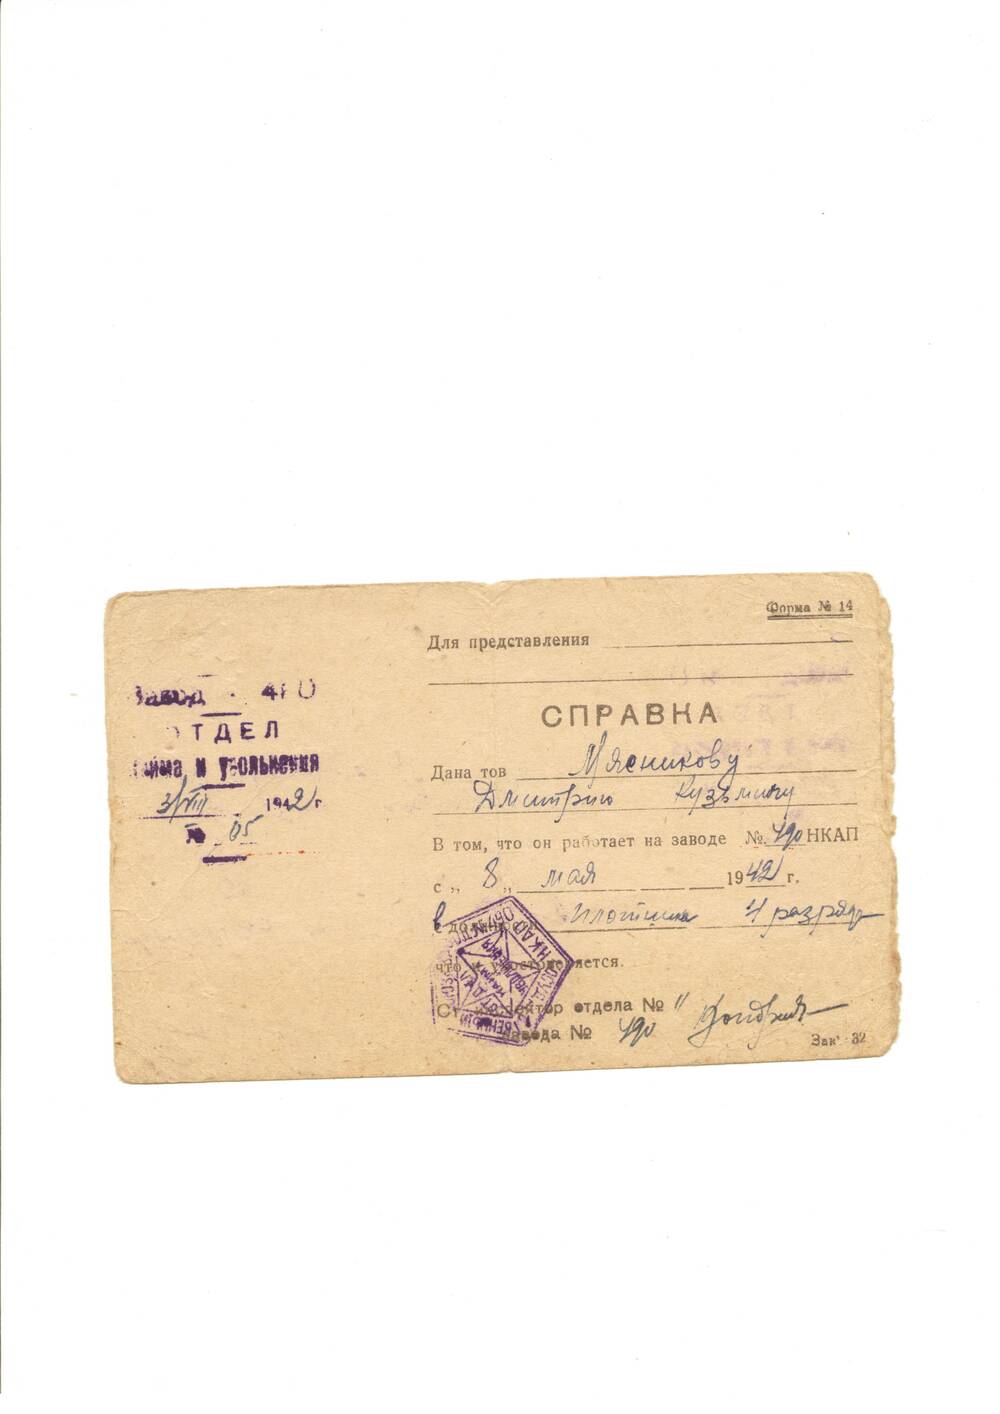 Справка №5 от 03.08.1942  Мясникова Д. К., подтверждающая, что он работал на заводе № 490 НКАП с 08.05.1942 года в должности плотника 4 разряда.